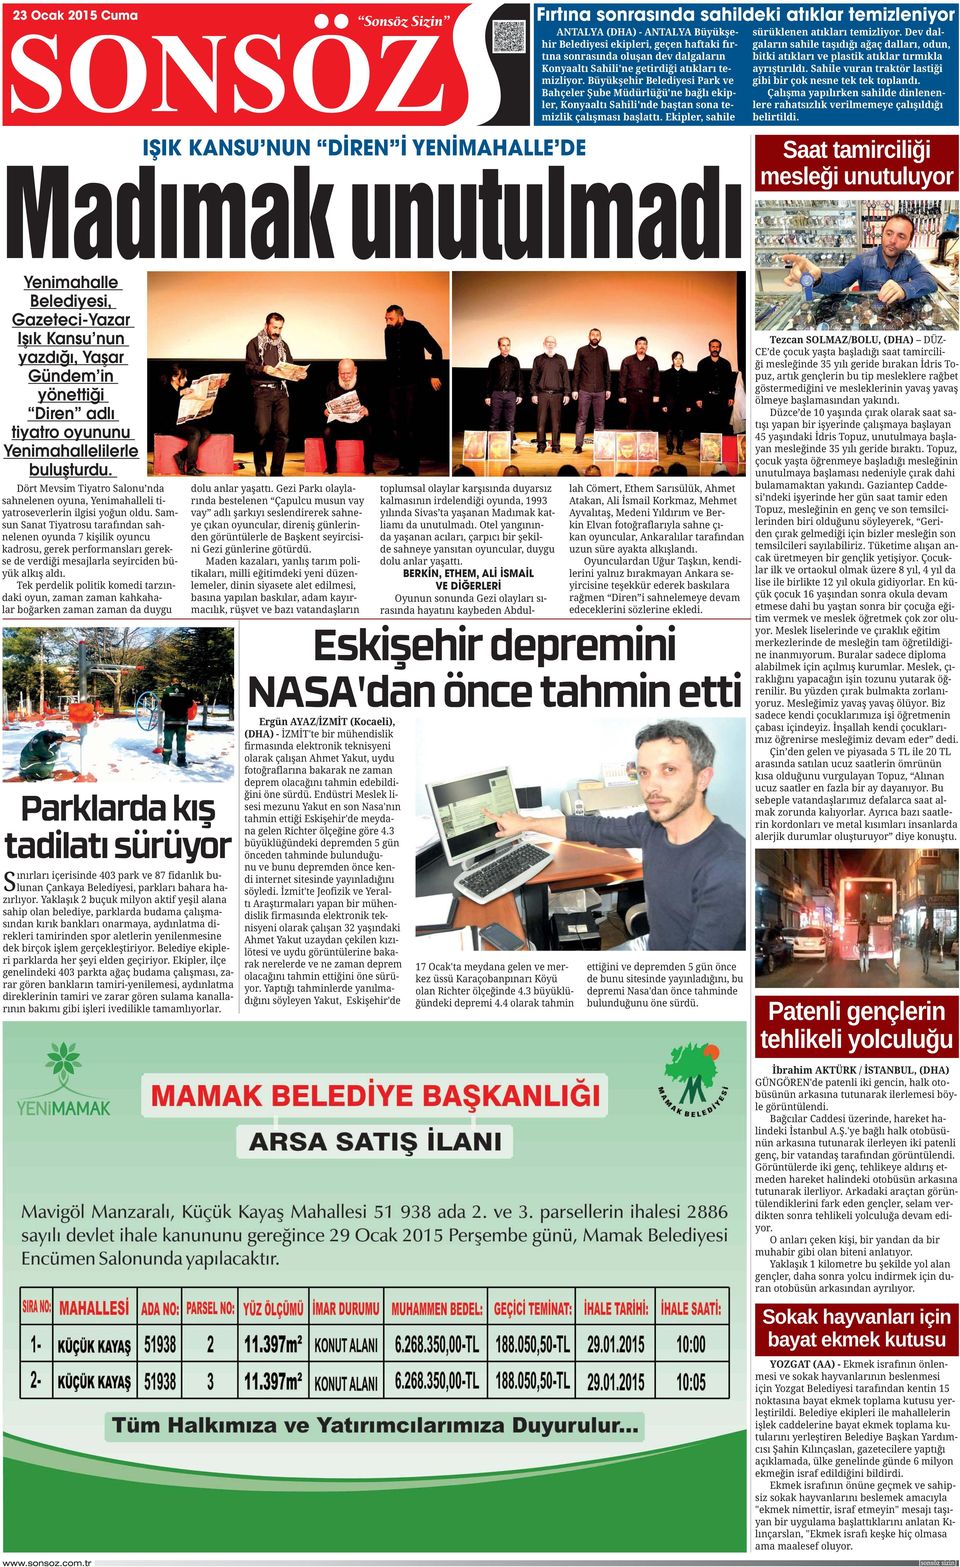 Belediyesi, Gazeteci-Yazar Işık Kansu nun yazdığı, Yaşar Gündem in yönettiği